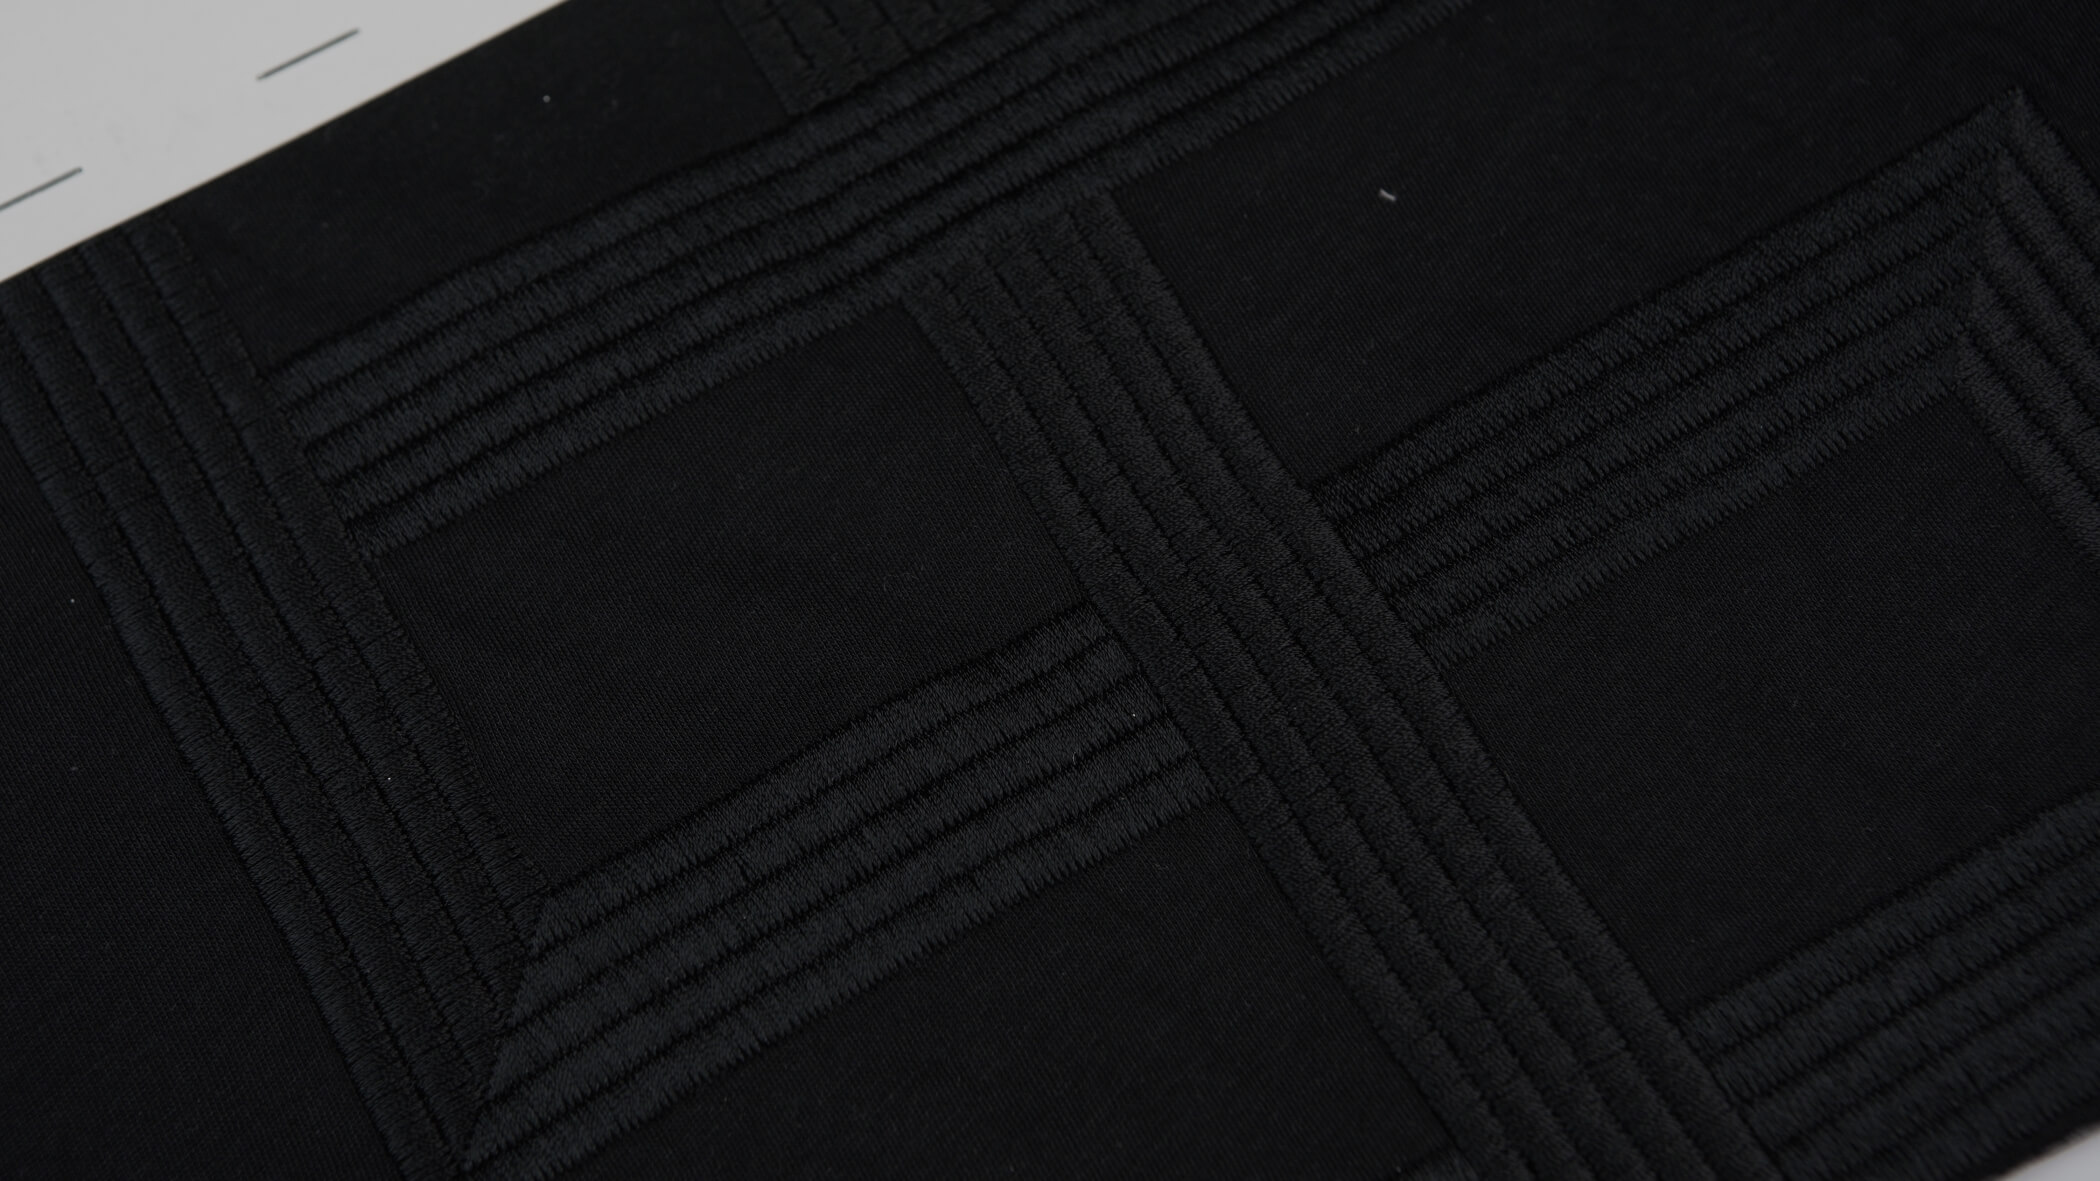 detalhe de bordado normal em preto sobre um fundo preto